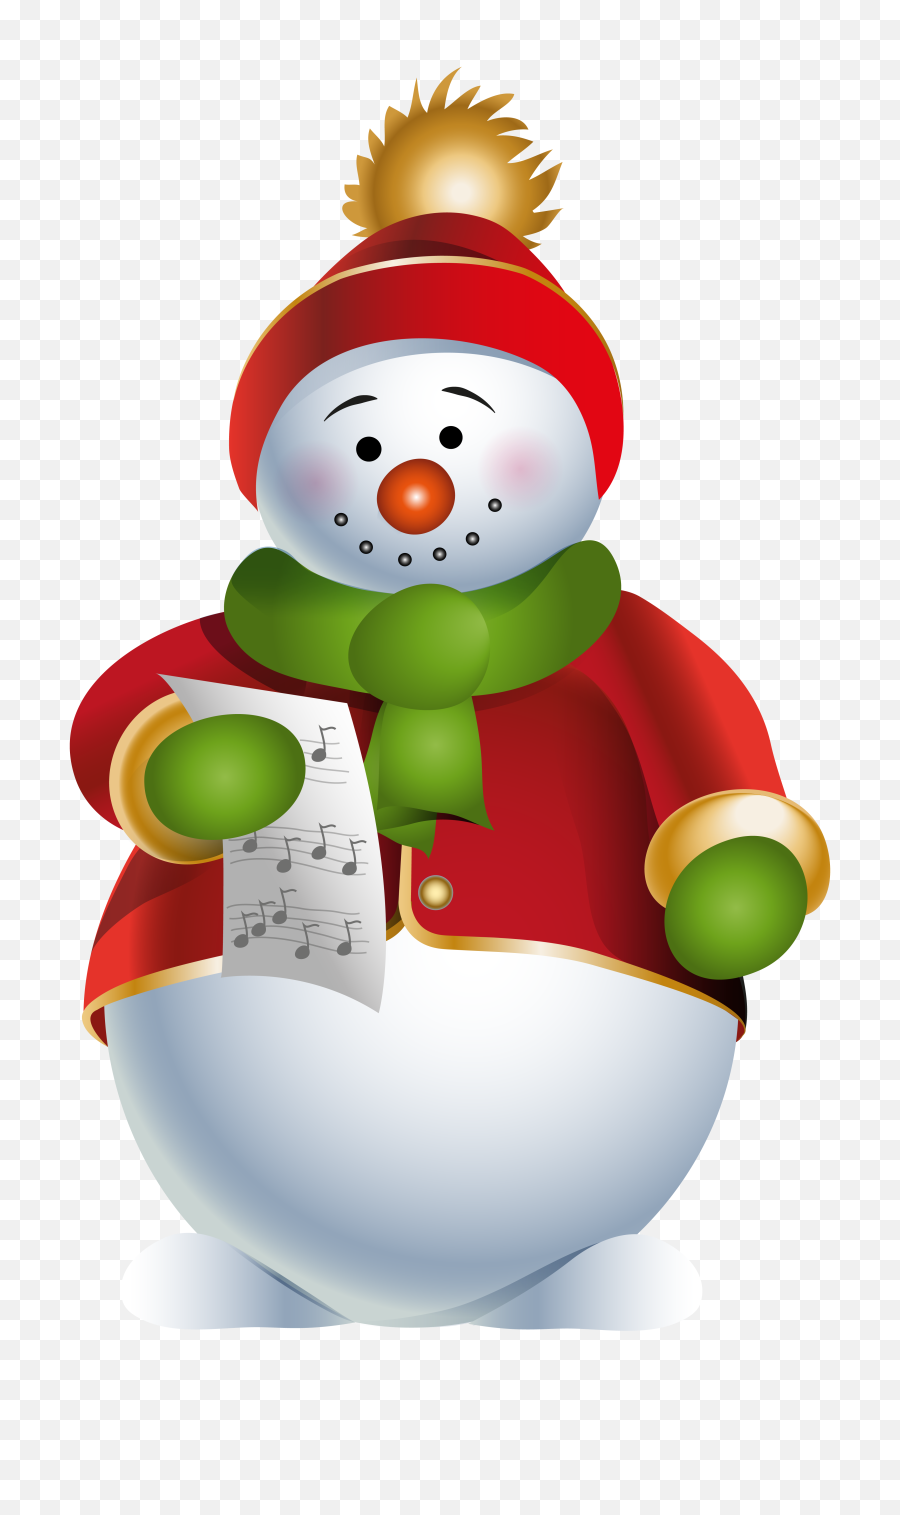 Snowman Transparent Png Clip Art Image - Christmas Snowman Png Transparent,Snowman Clipart Transparent Background